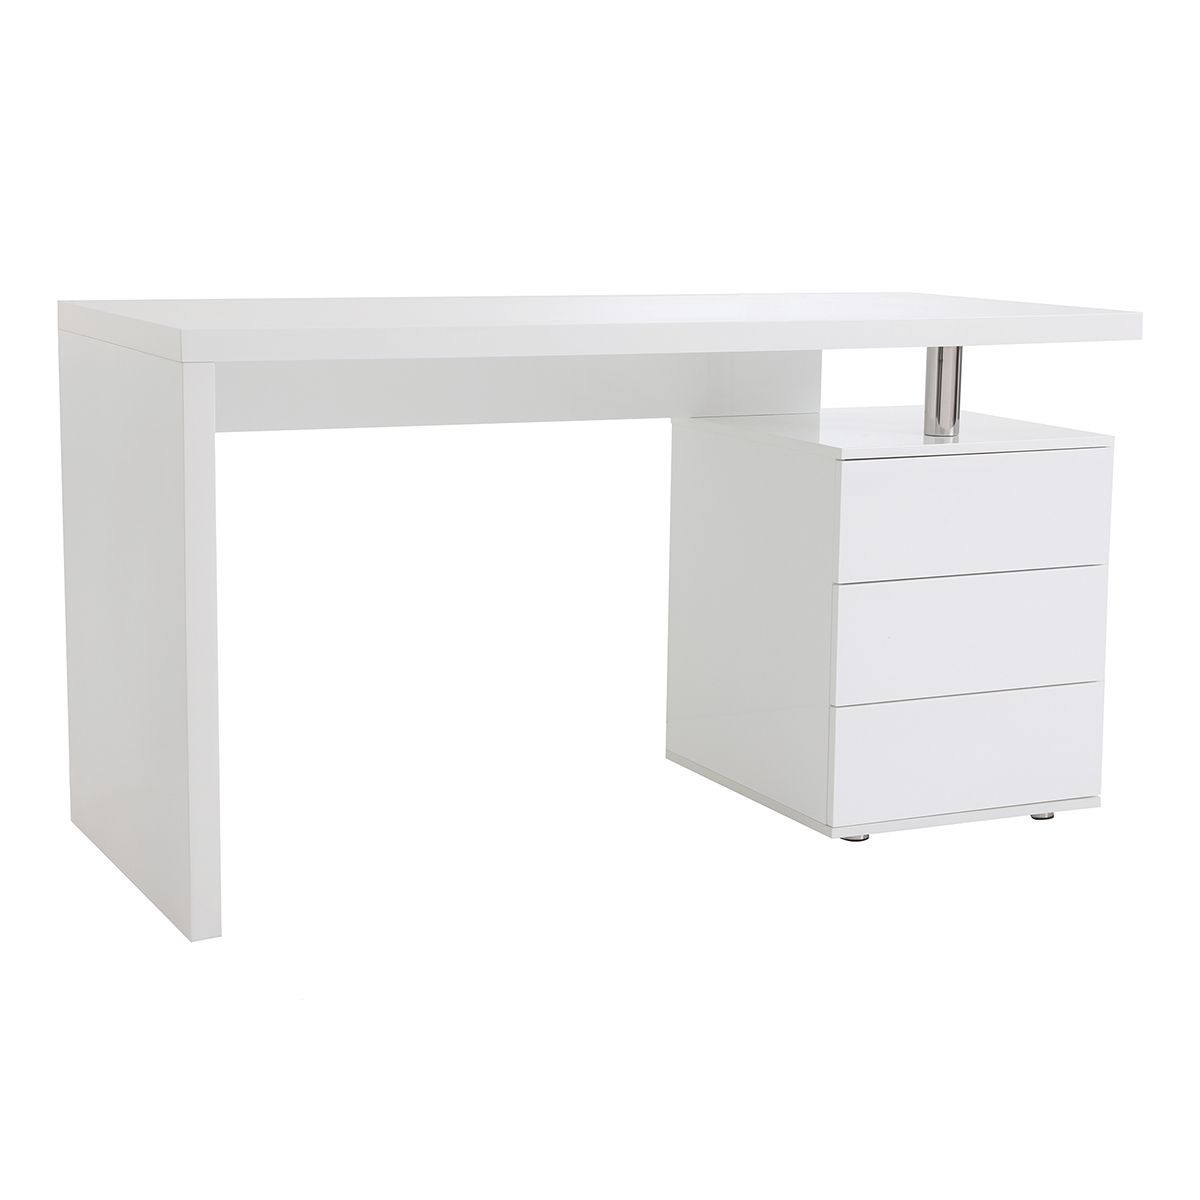 Bureau avec rangements 3 tiroirs design bois clair chêne et blanc